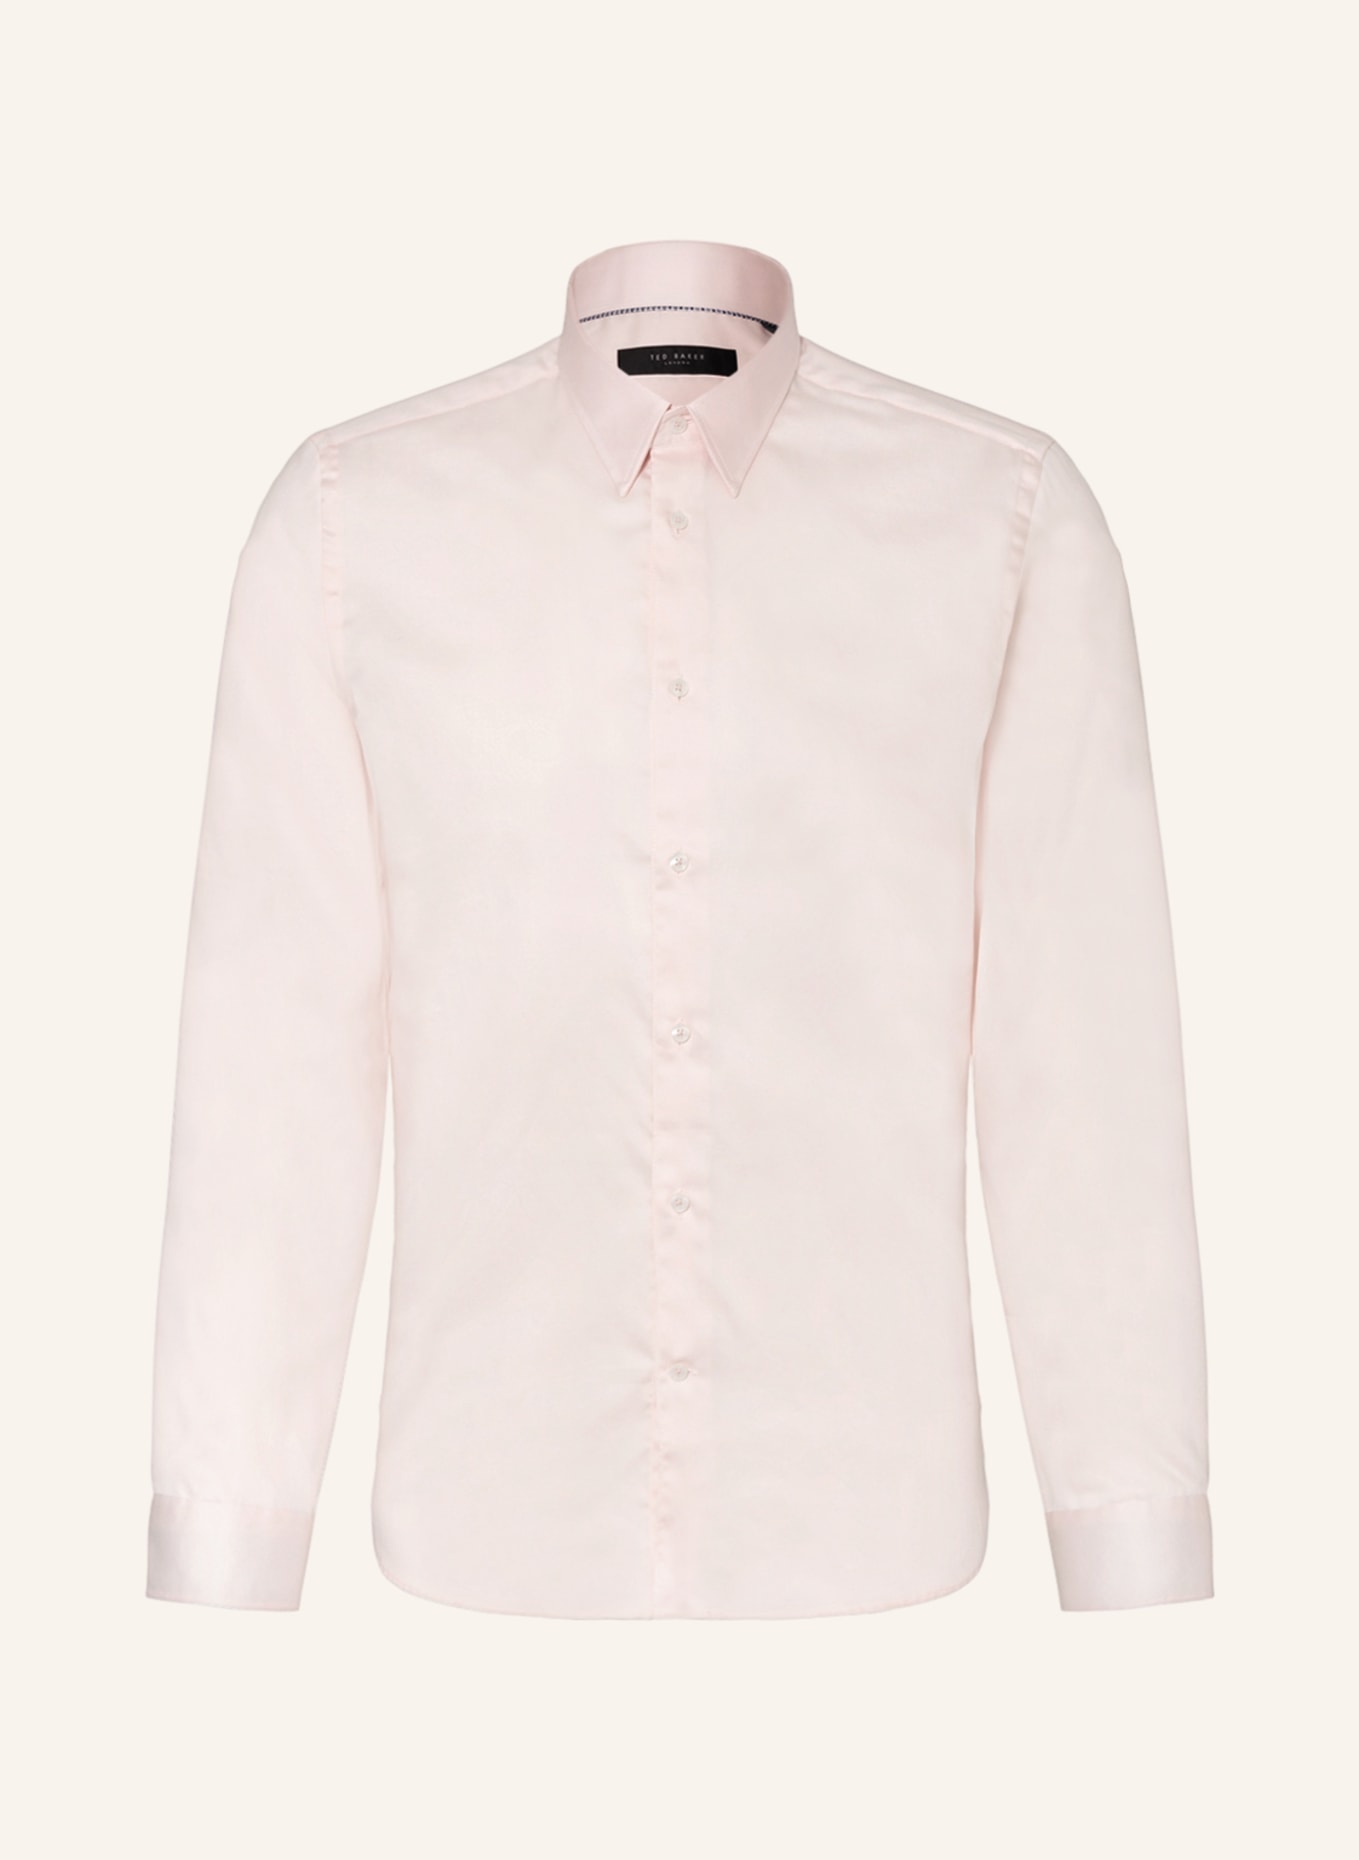 TED BAKER Hemd MAELOSS Slim Fit , Farbe: ROSA (Bild 1)